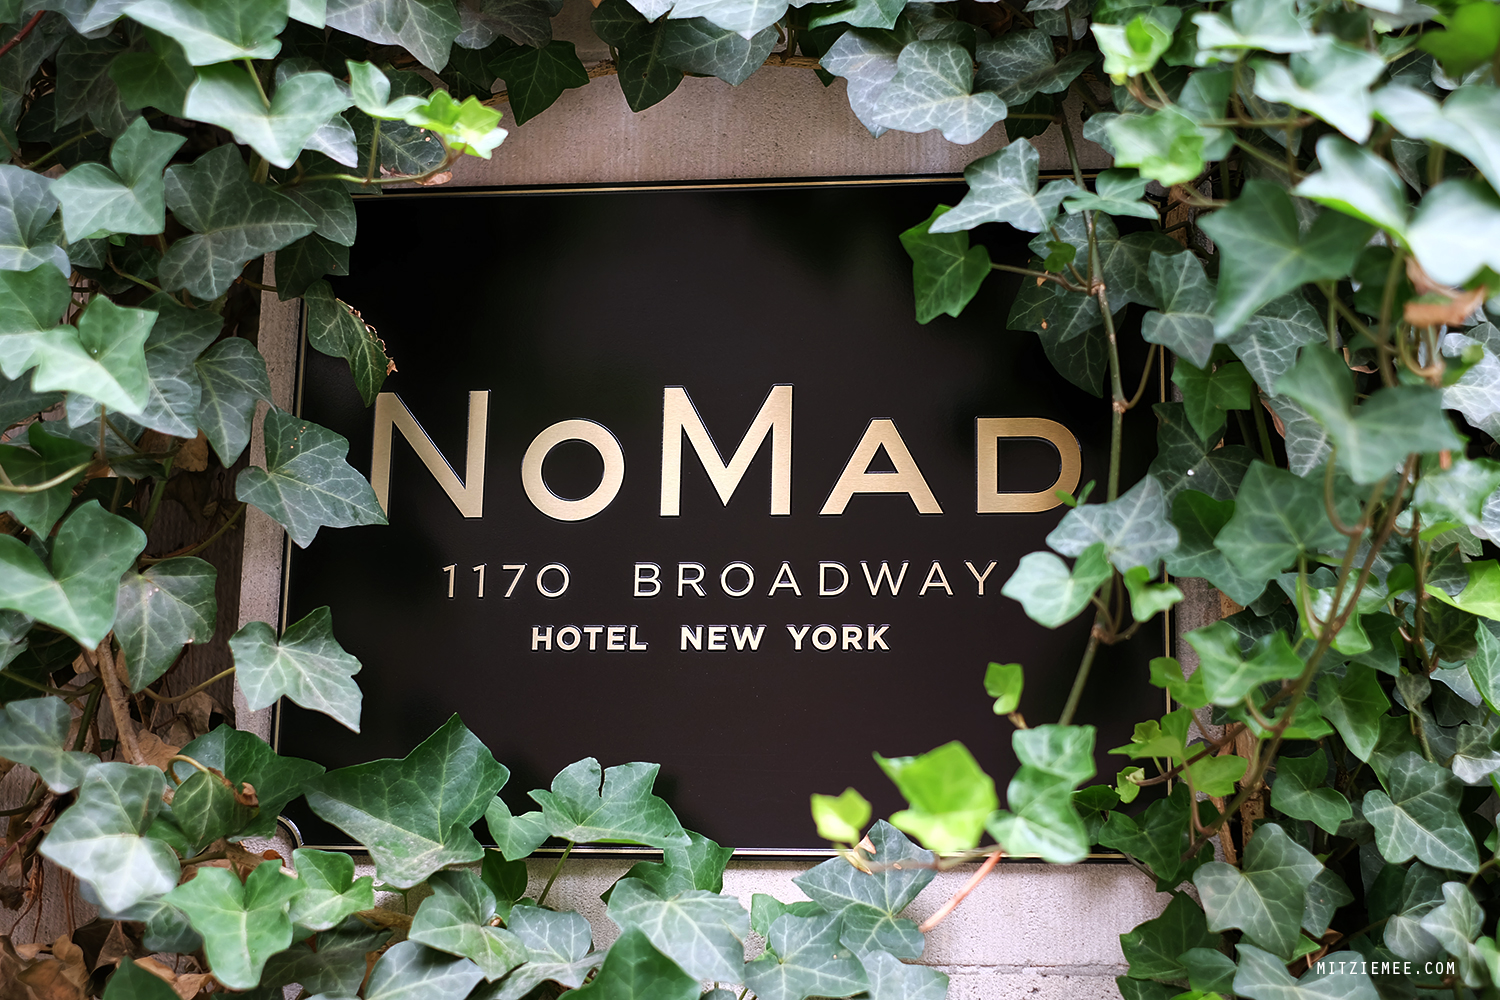 Nomad Restaurant, New York